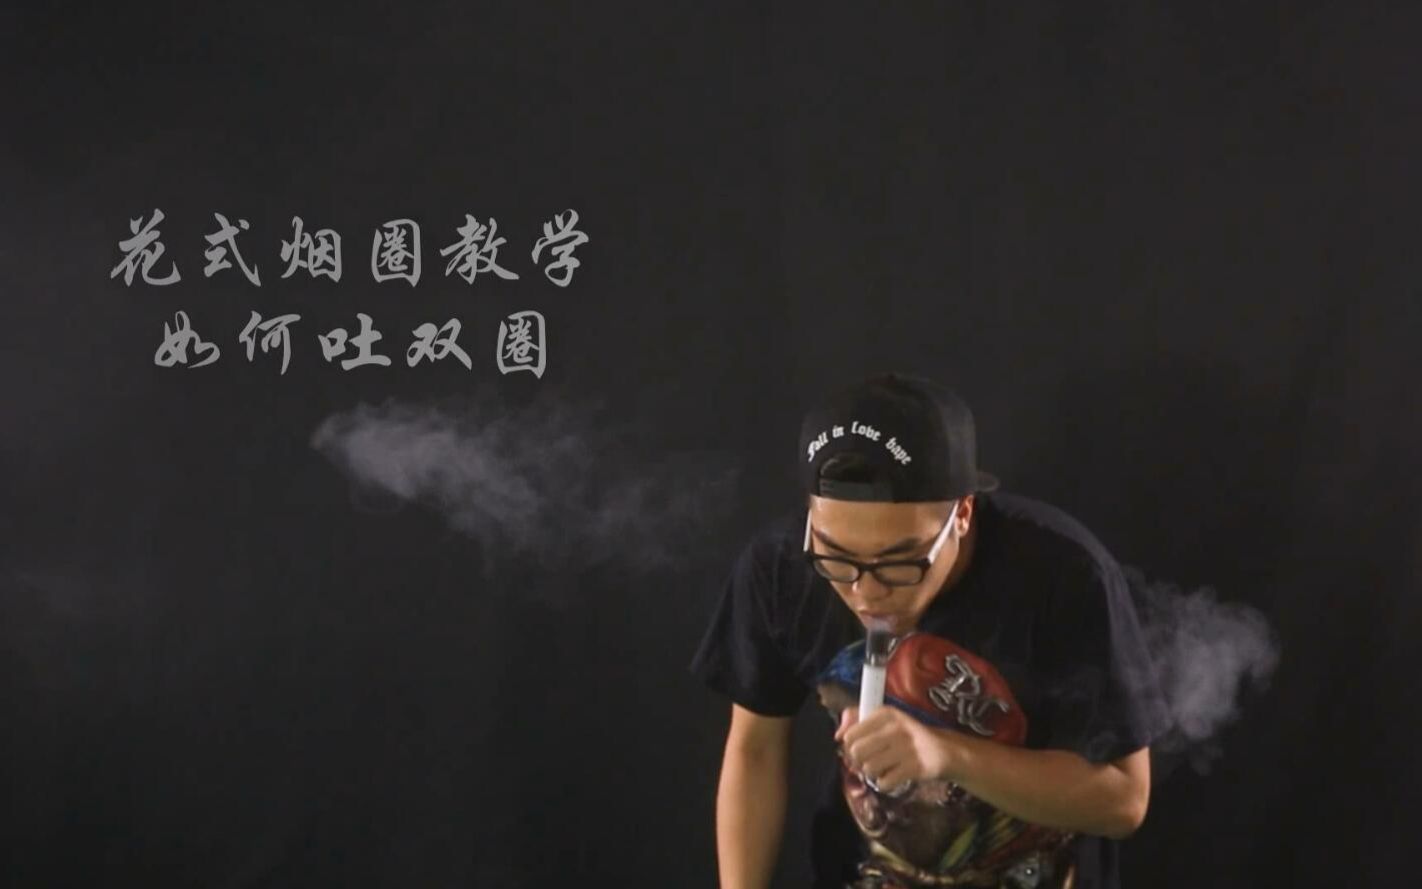 吐烟圈教学视频教程:怎么吐双连花式烟圈技巧